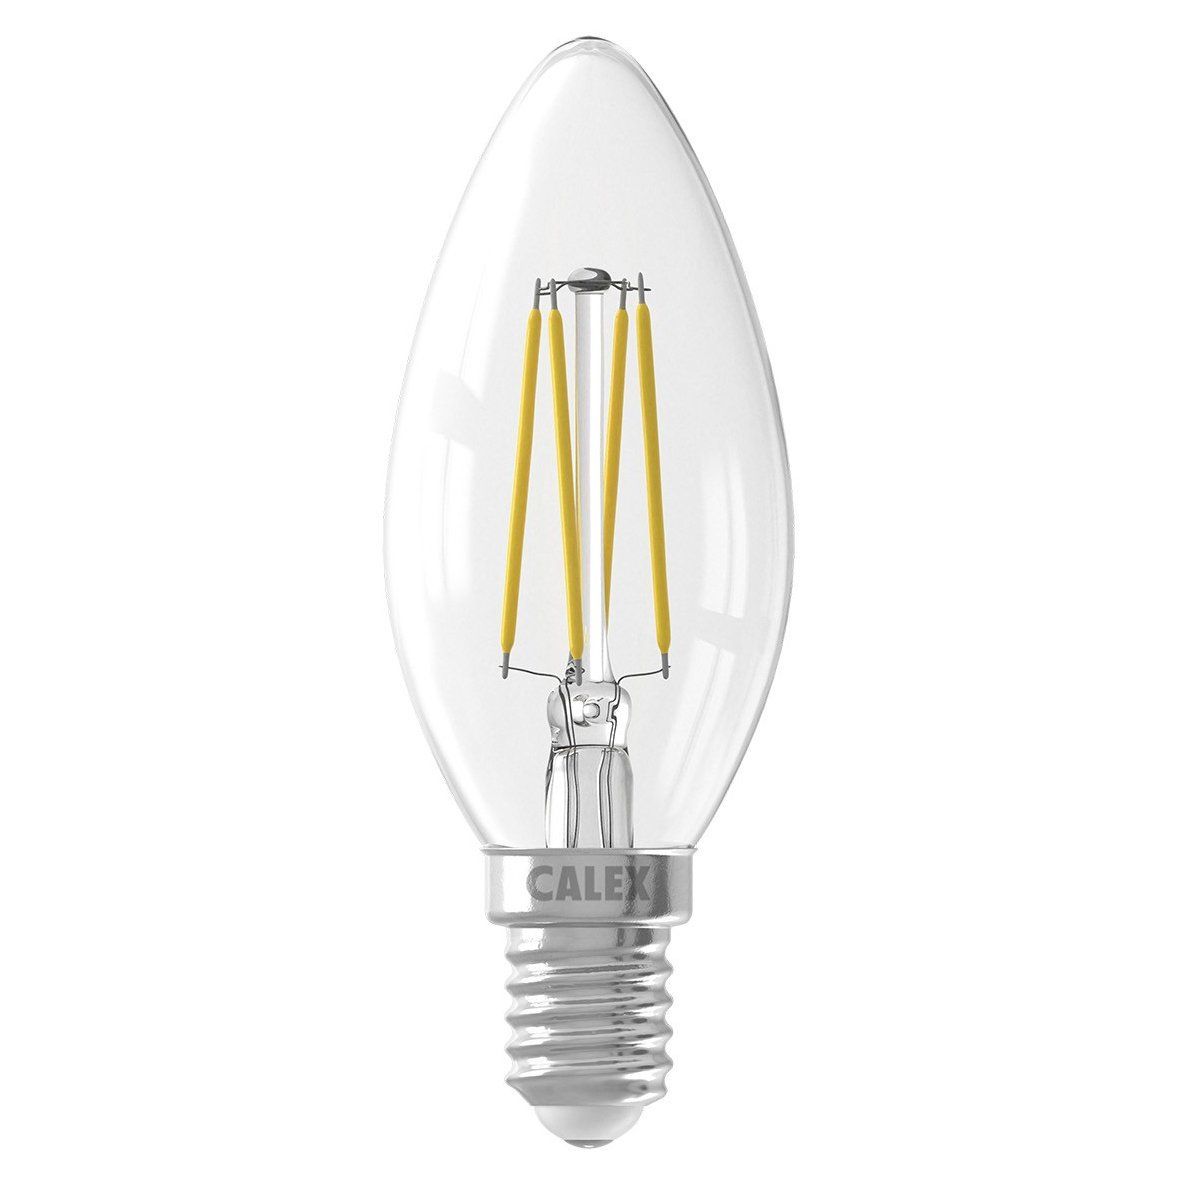 Ynl Lampe Led Cristal Scène Lumière Rgb Ampoule 6w E27 Coloré